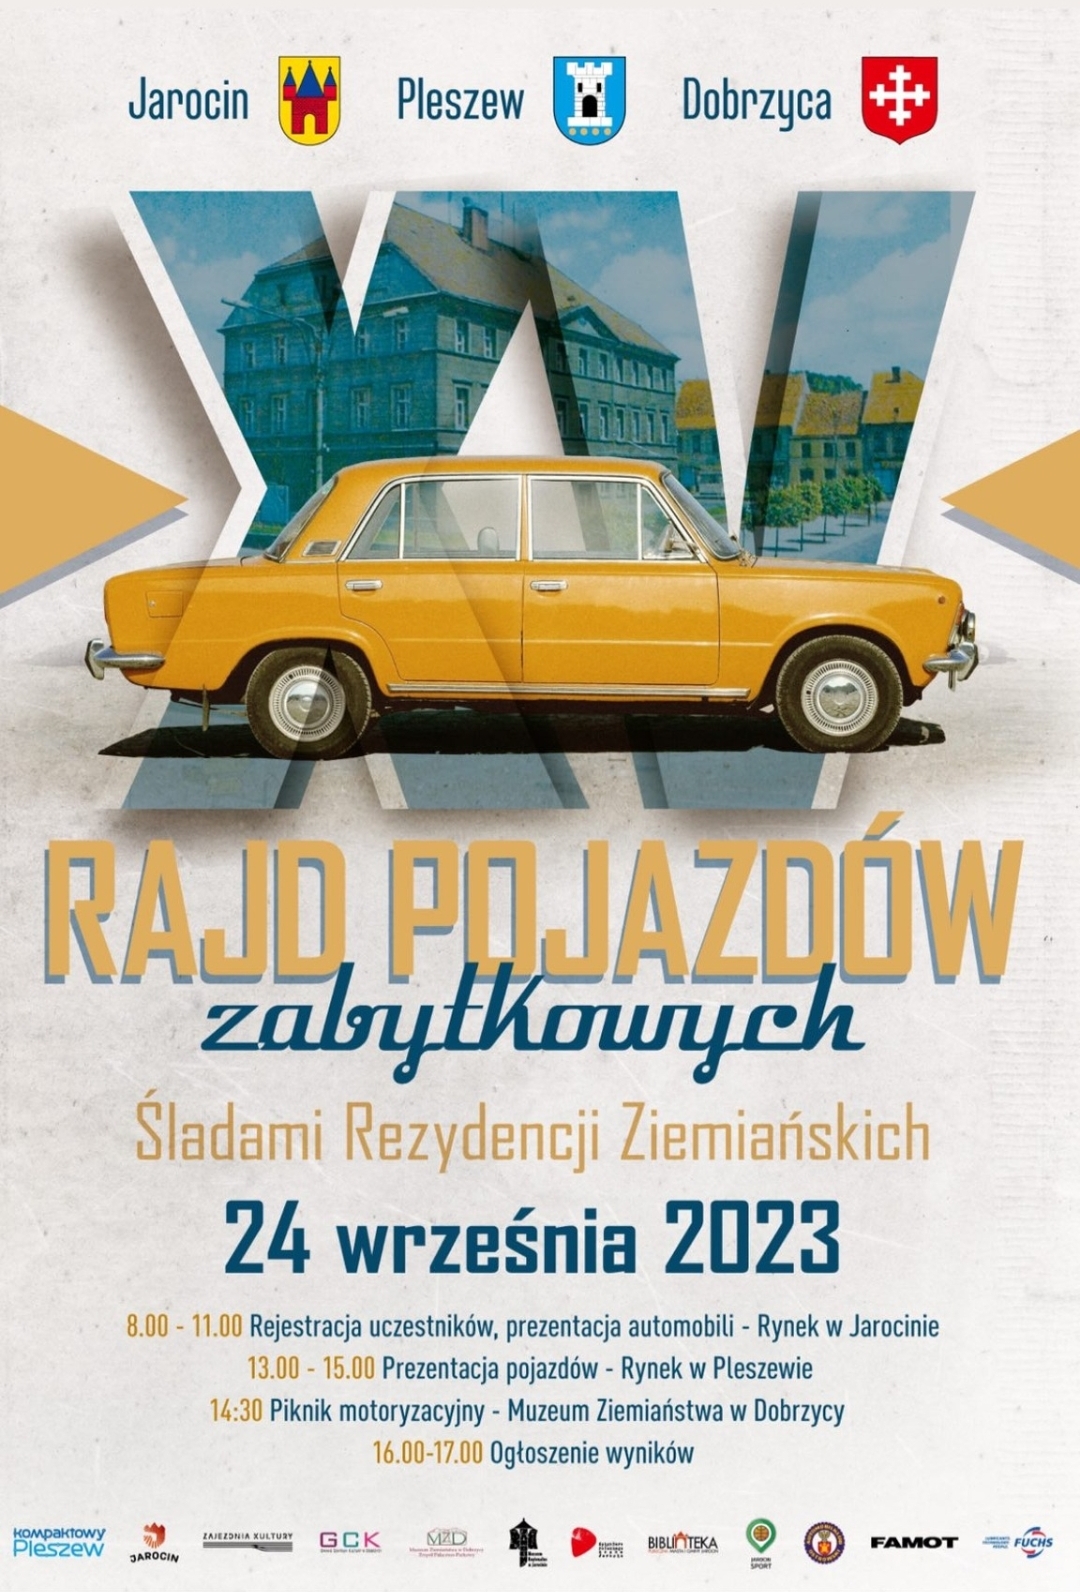 Plakat XV Rajdu Pojazdów Zabytkowych organizowanego w Jarocinie, Pleszewie i Dobrzycy 24 września 2023 roku w godzinach 8:00-17:00.